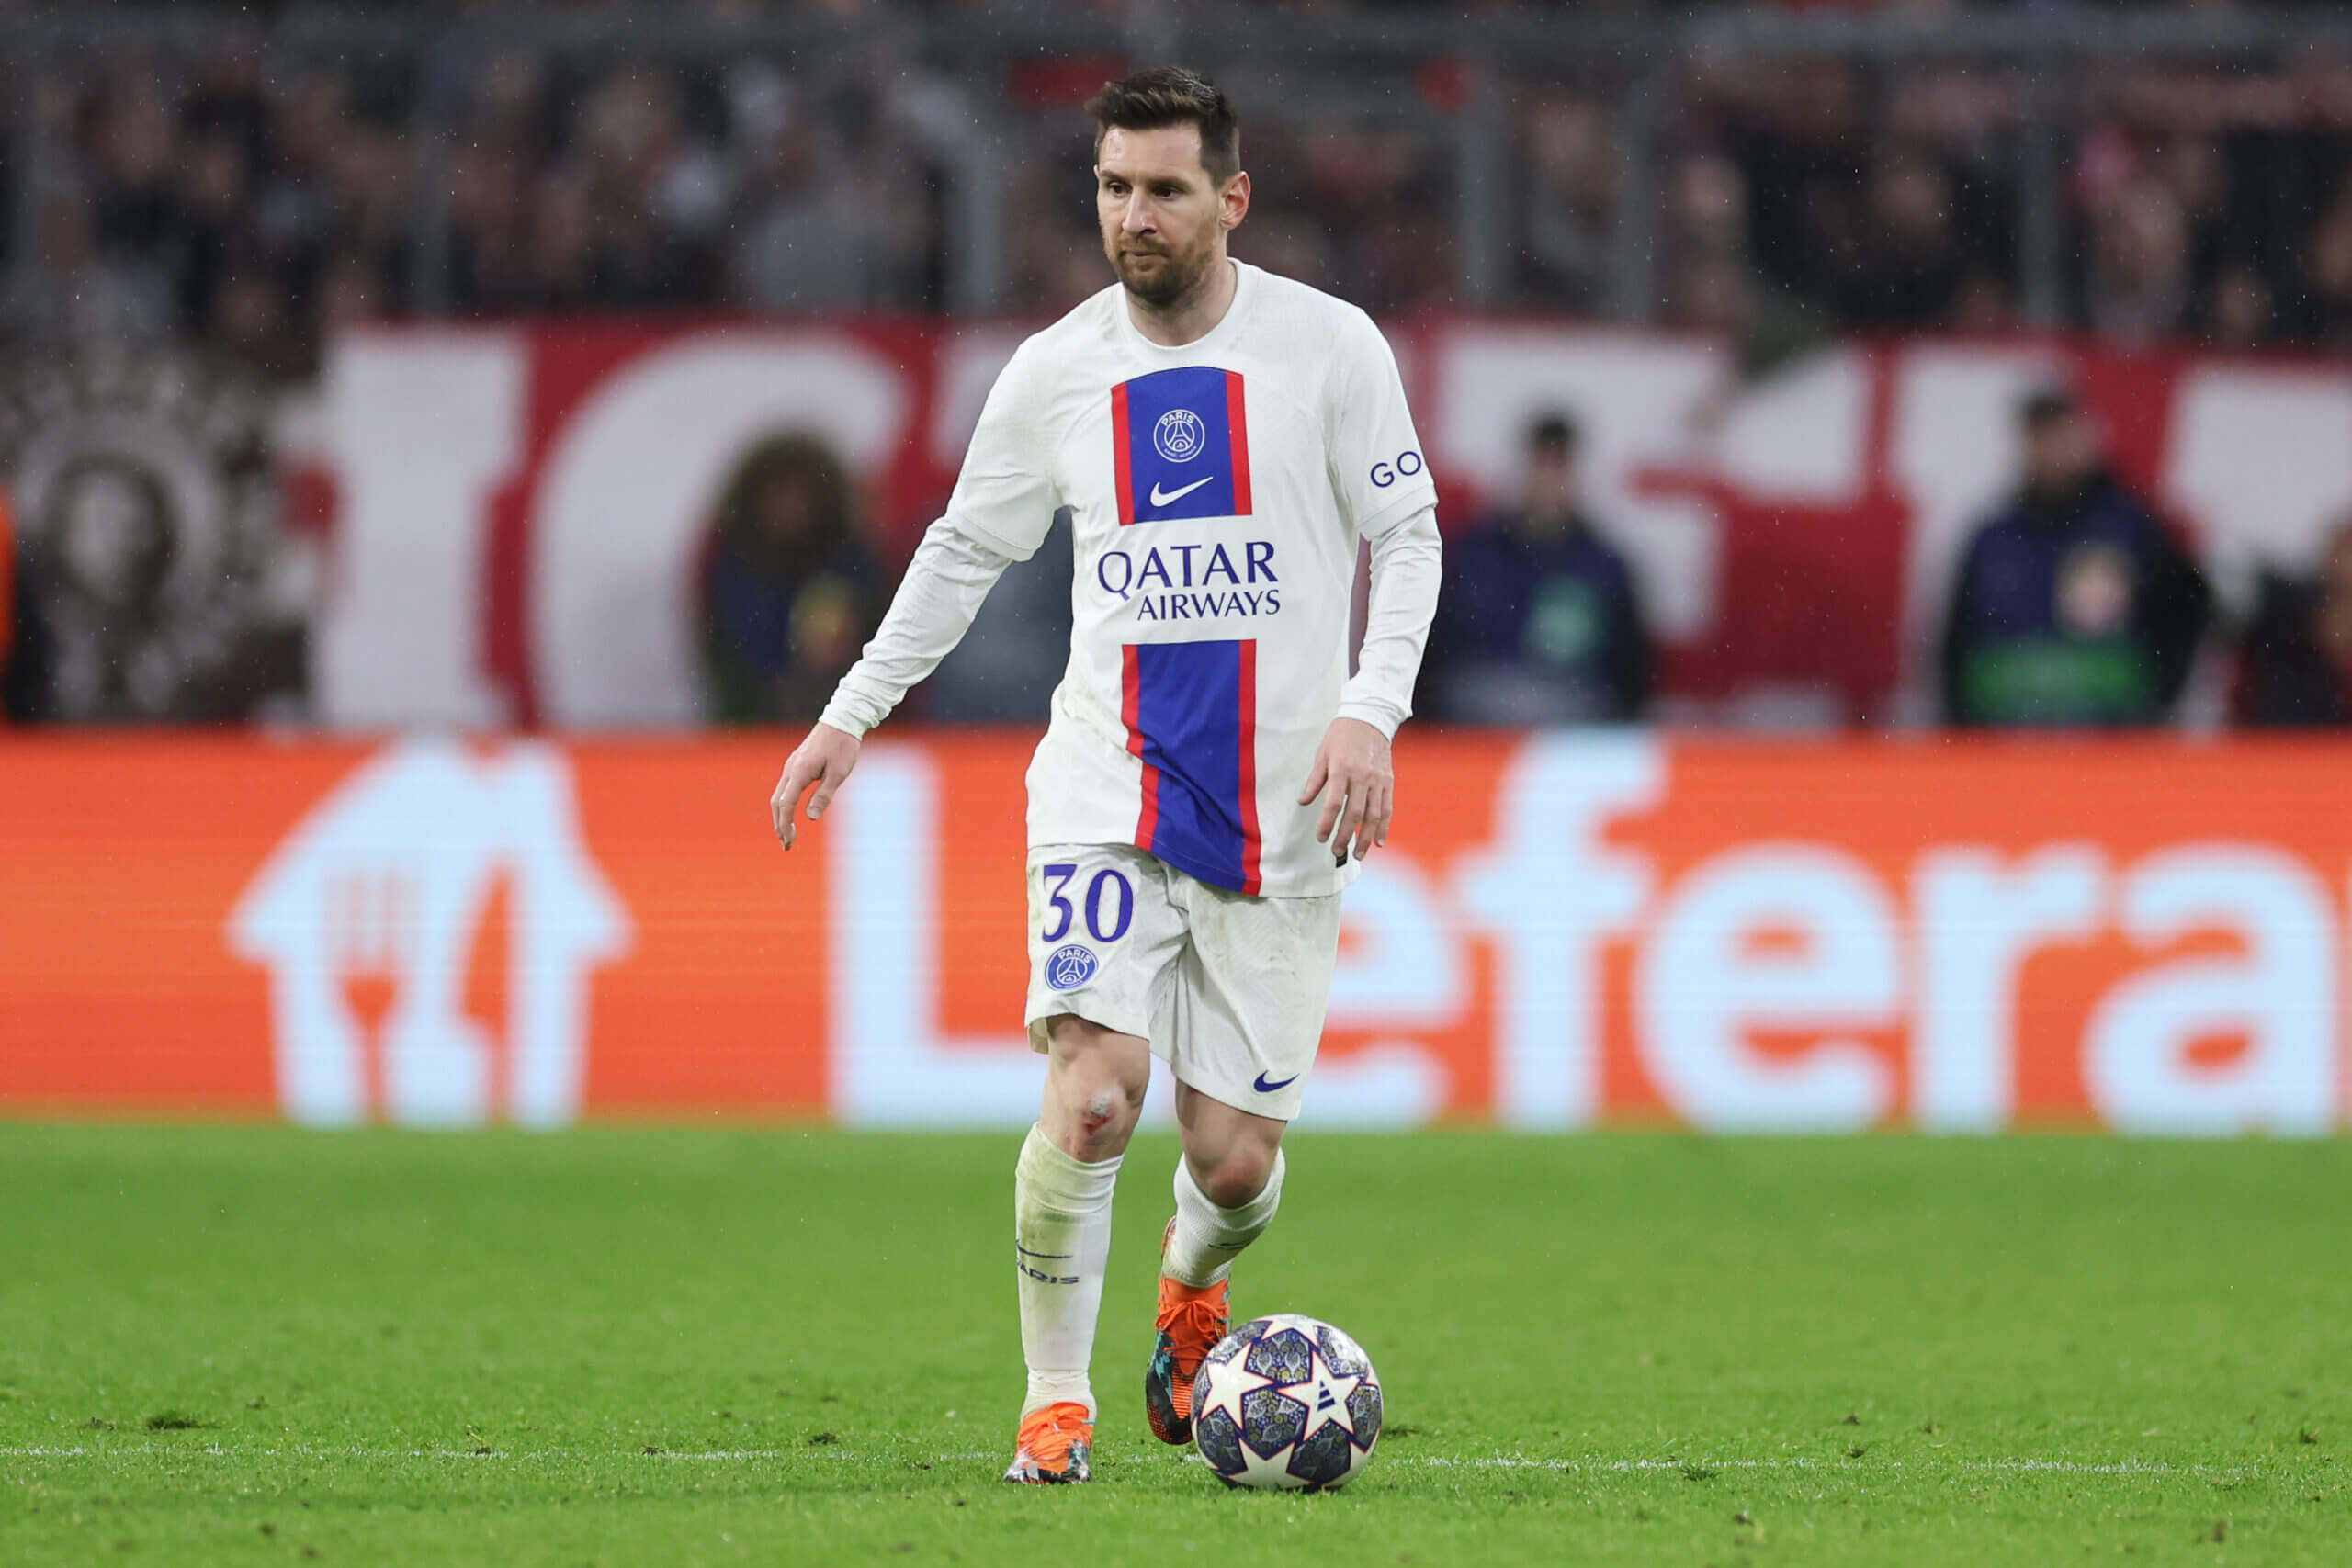 Sau những thất bại muối mặt ở Champions League, tương lai của Messi tại PSG mong manh hơn bao giờ hết